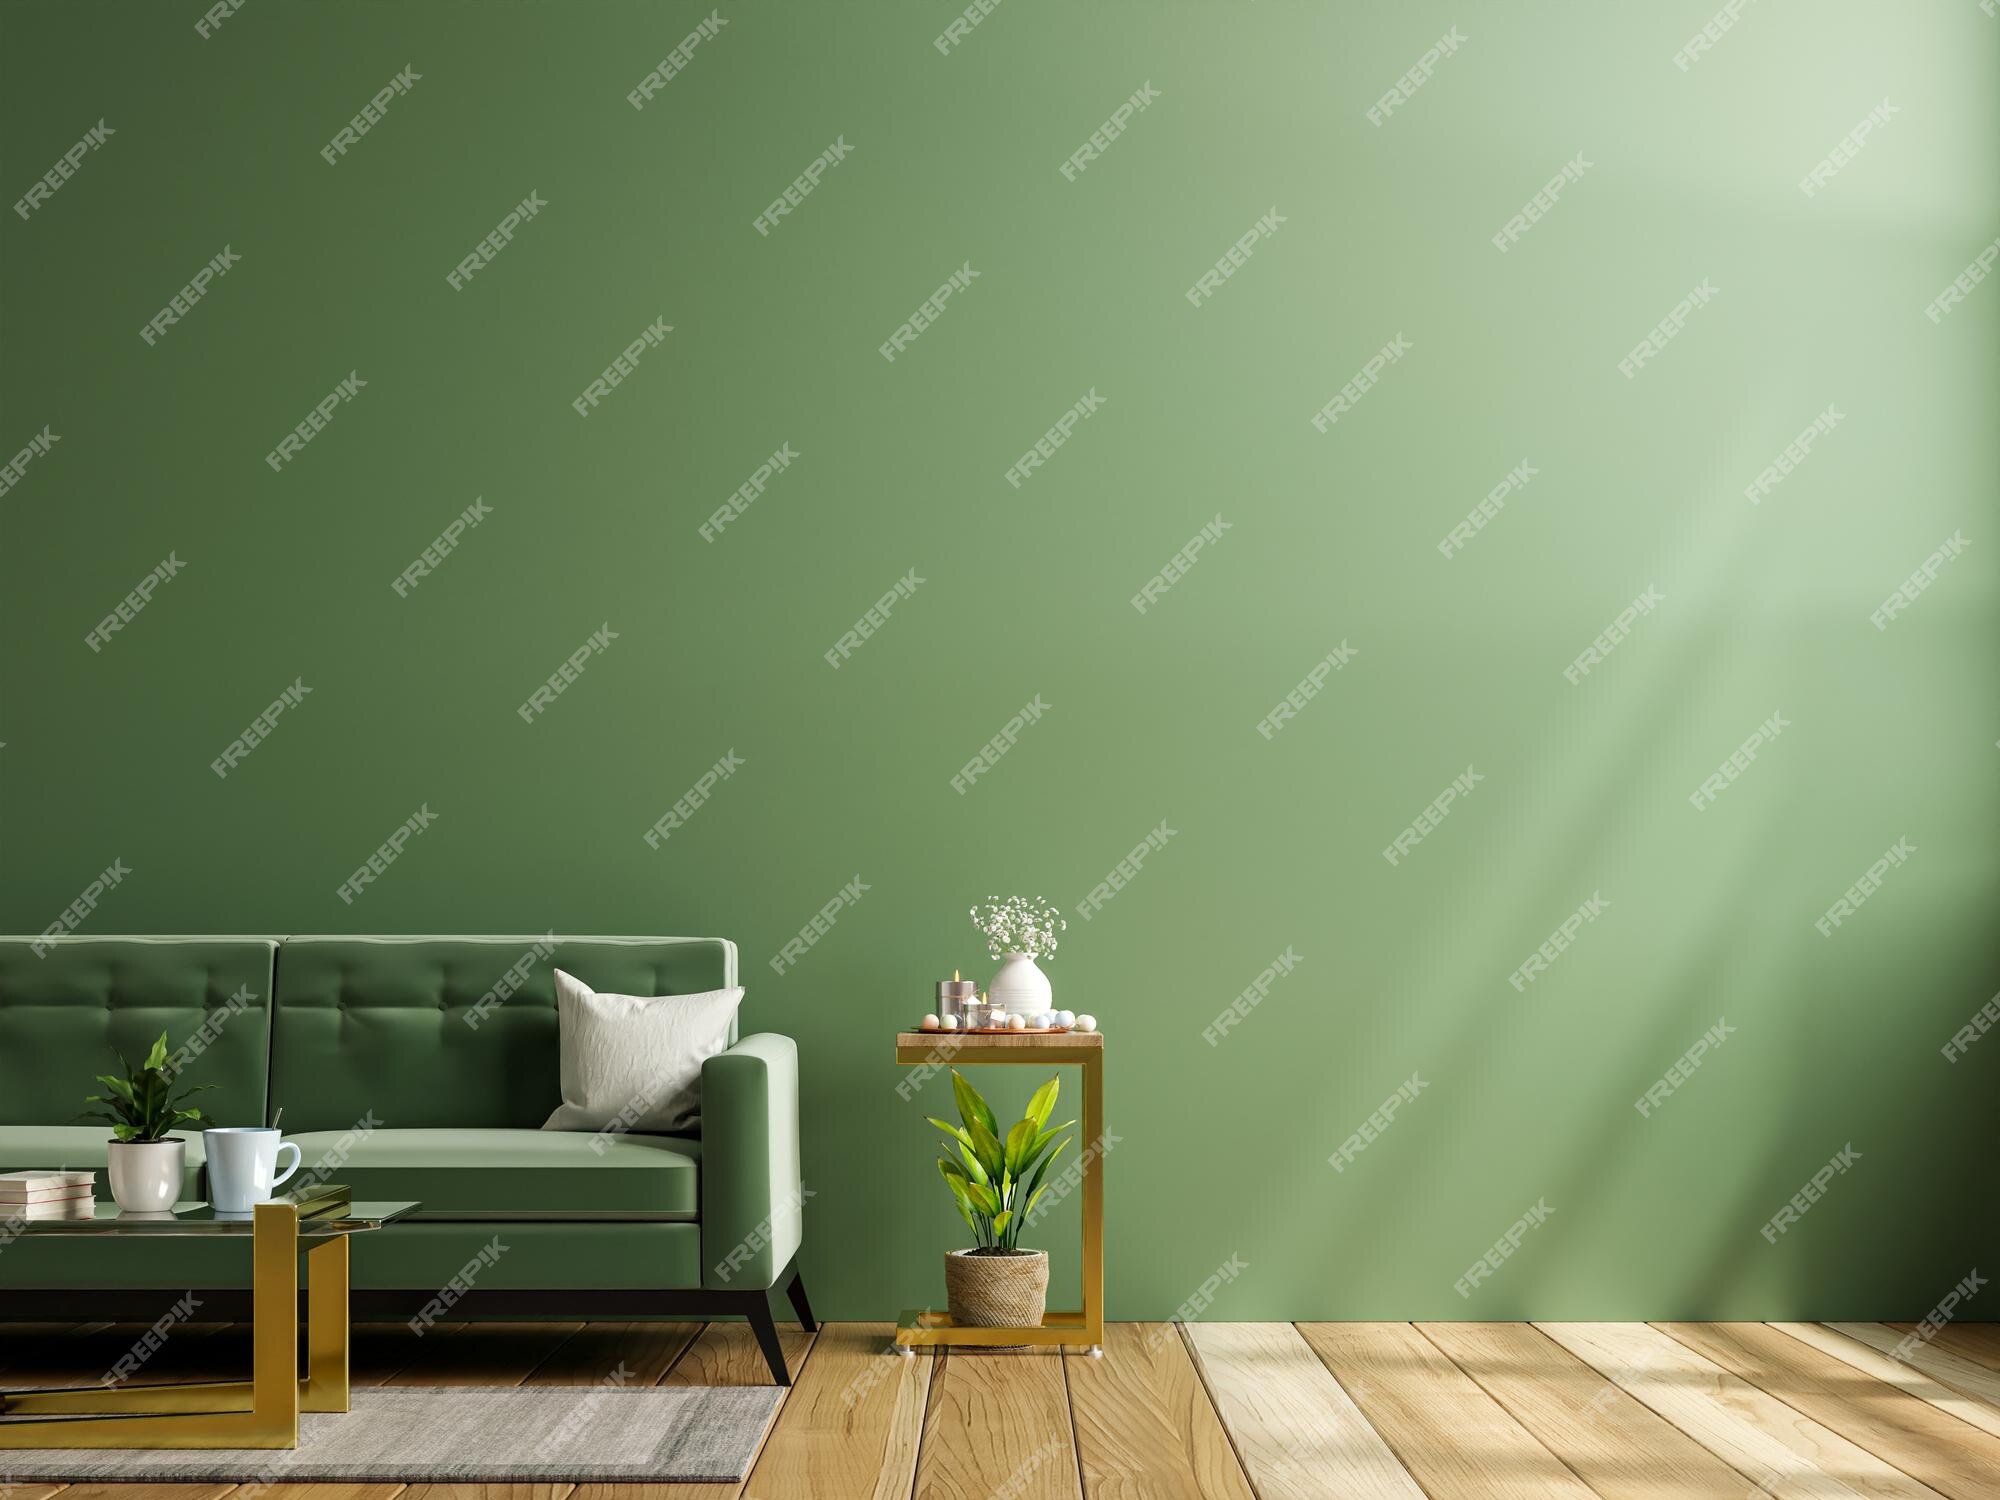 Thiết kế phòng khách với tường xanh lá cây mô phỏng hình nền chất lượng cao sẽ mang lại cho căn phòng của bạn một cảm giác sinh động và tươi mới. Khi kết hợp với hình nền chất lượng cao, không gian sống của bạn sẽ trở nên tràn đầy sức sống và rực rỡ. Hãy cùng tận hưởng những giây phút thoải mái tuyệt vời cùng hình nền phòng khách này.